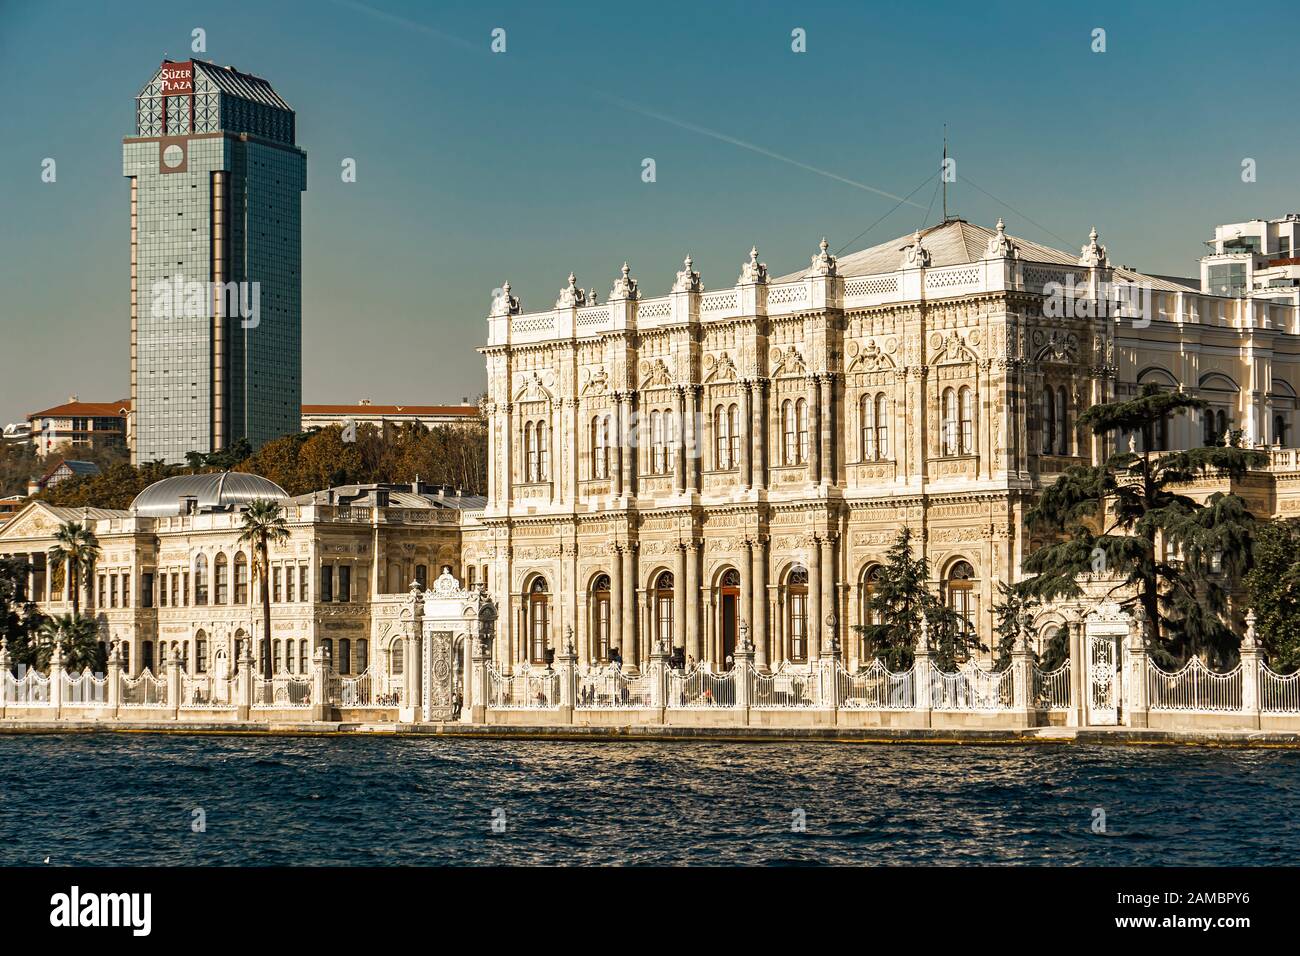 ISTANBUL, Türkei - 9 November, 2019: Dolmabahçe-Palast in Istanbul, Türkei. Palast wurde im Jahre 1856 gebaut und diente als die wichtigsten administrativen Zentrum von t Stockfoto